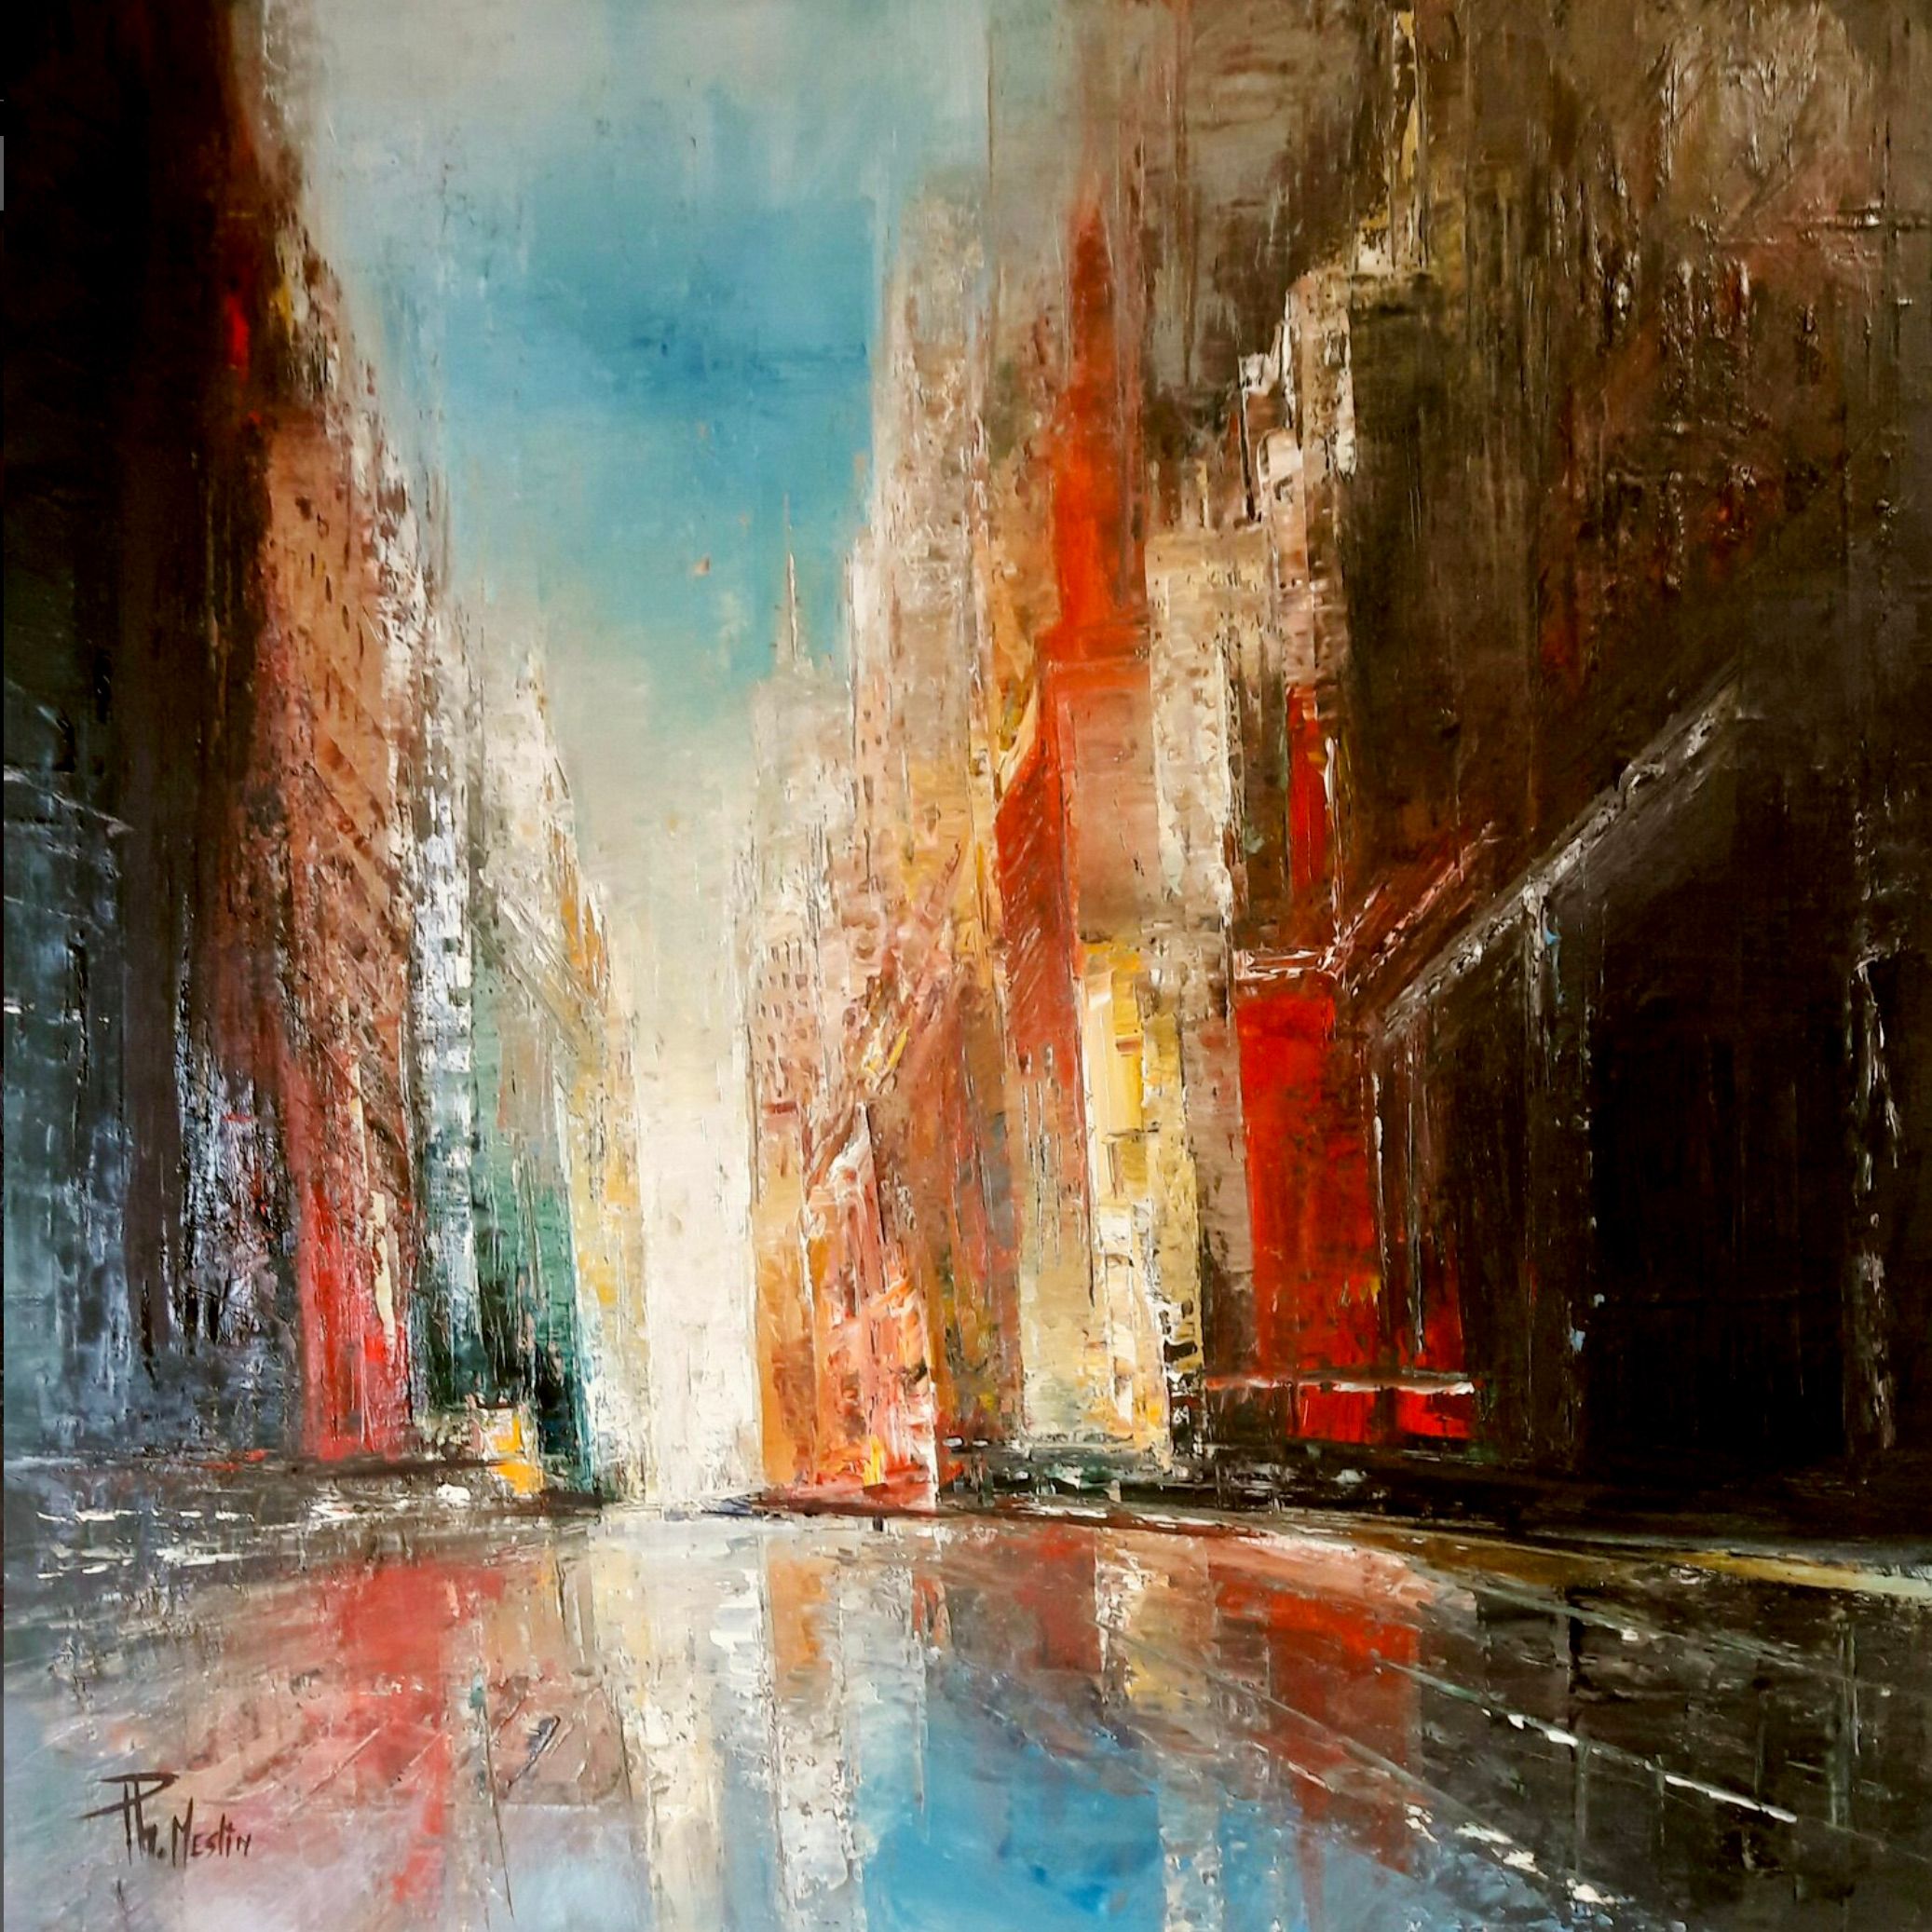 菲利普-梅斯林的 "Reflets urbains "油画，是一幅具象的有点抽象的彩色油画，描绘了一个城市。